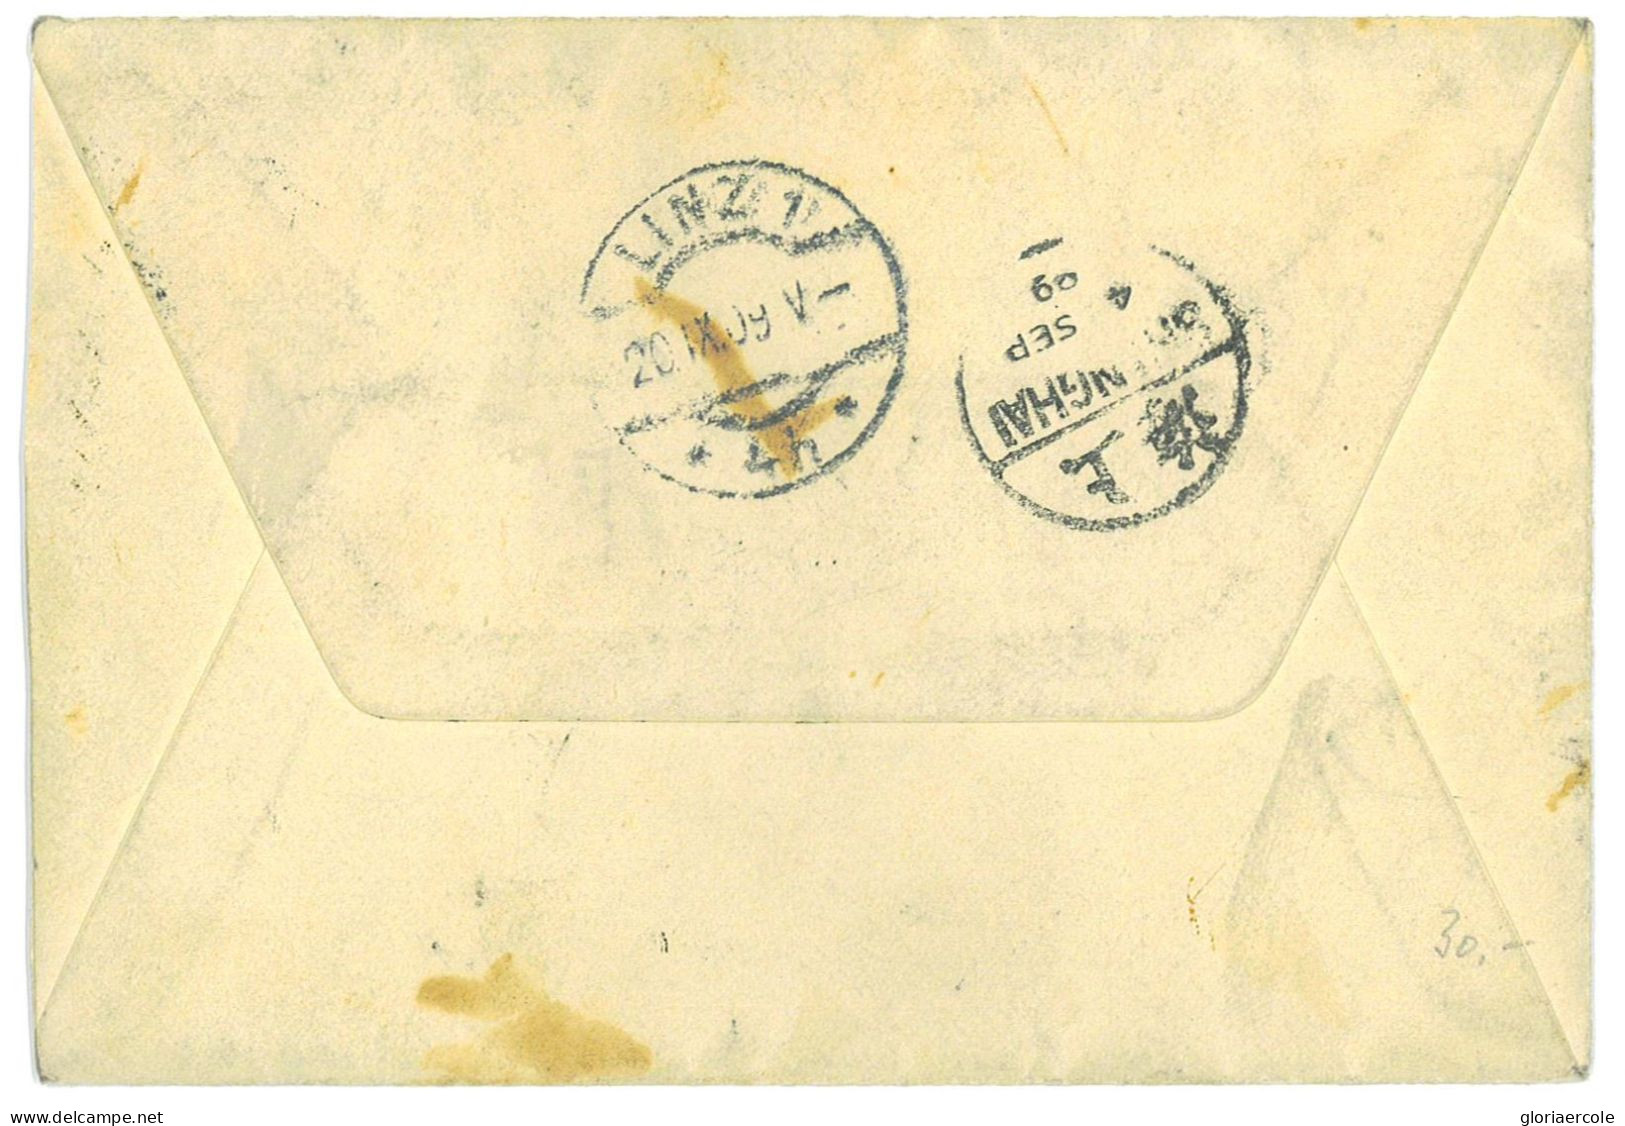 P2774 - 3 COLOUR ENVELOPPE FROM SHANGAI TO AUSTRIA 1909 - Storia Postale